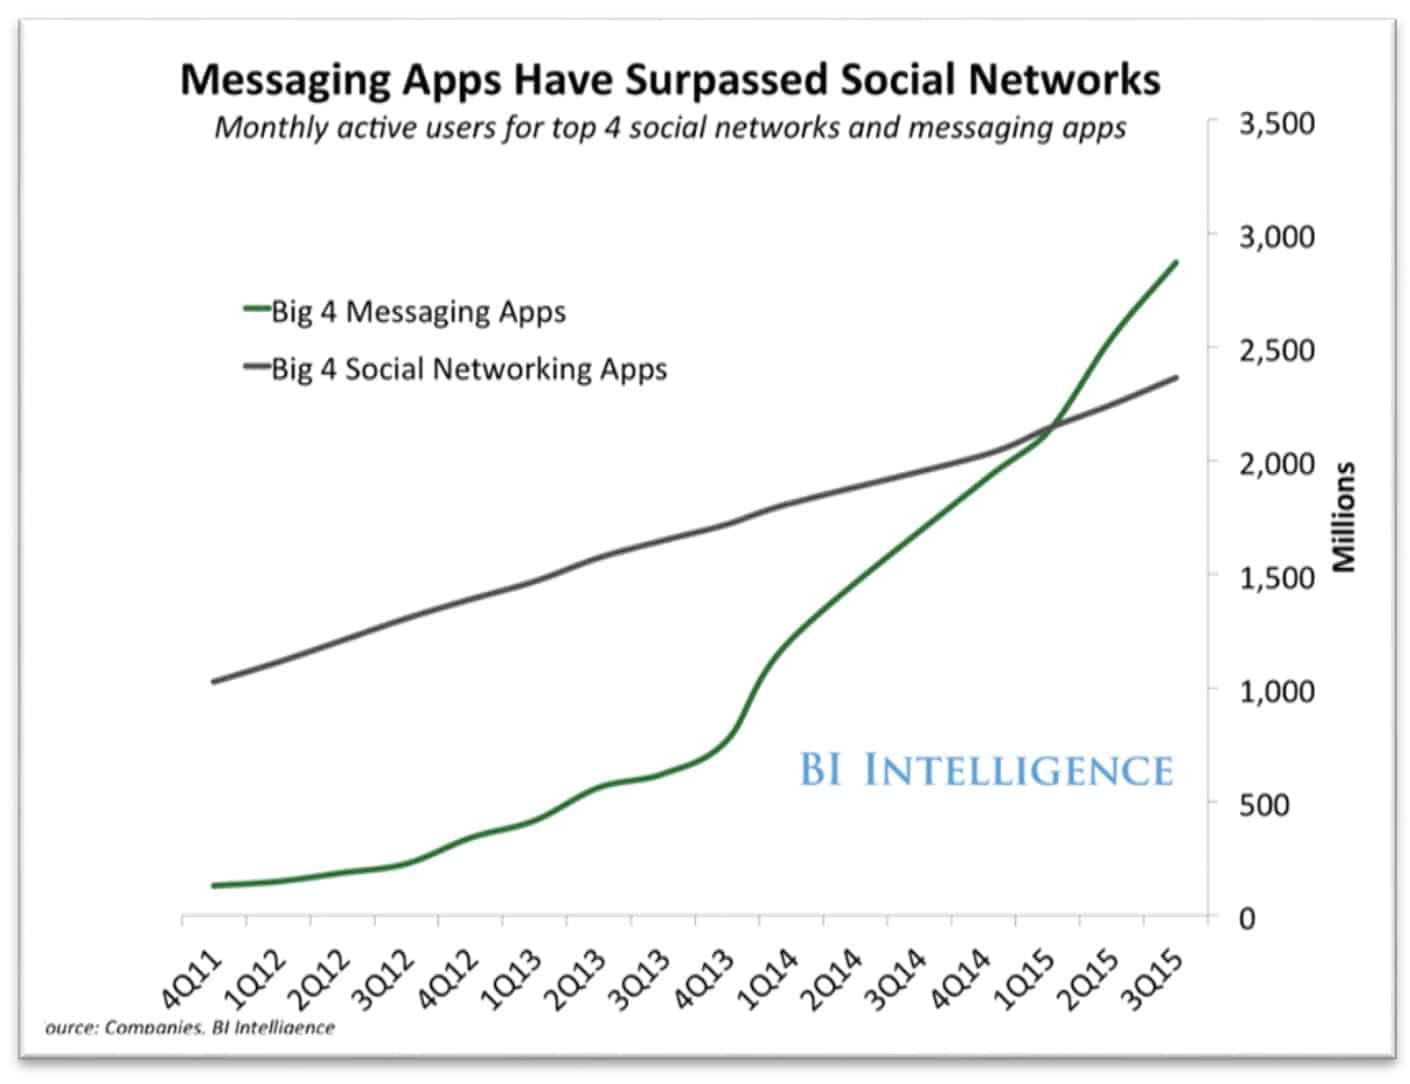 2016 年 Chris Messina提出「對話式商務」的概念，源於當時使用通訊軟體的消費者已超越使用社群平台的消費者。 